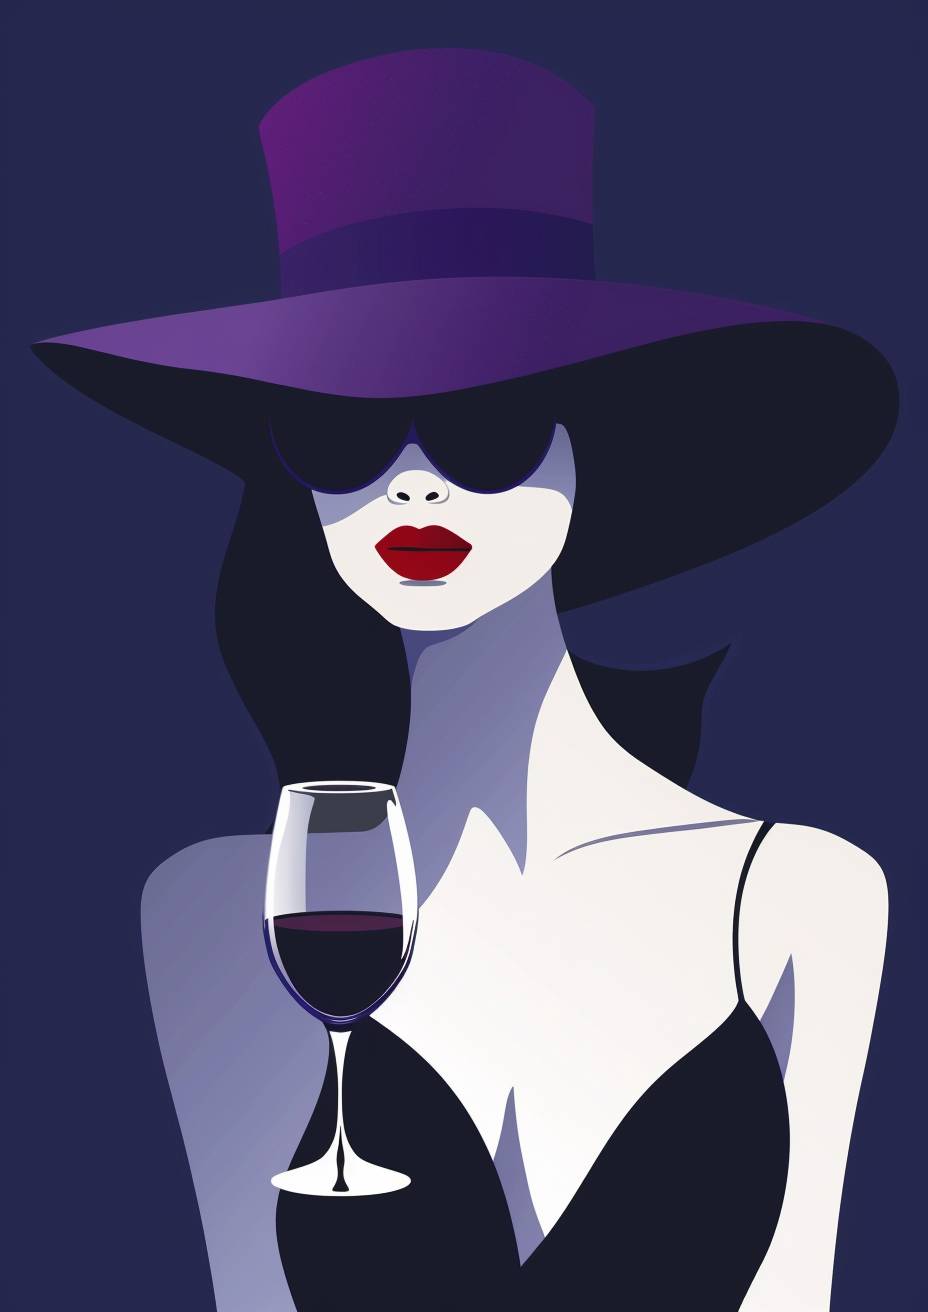 ミニマリストのポスターデザイン。紫の帽子をかぶった神秘な女性、白い肌と赤い唇、黒いドレスを着ています。彼女はワイングラスを持っています。パトリック・ナーゲルのスタイルのミニマリストのベクターイラスト。深い青い背景。きれいな線、大胆な形、洗練されたもの。ヴィンテージファッションポスターに触発されました。高いコントラスト。単色のカラースキーム。大胆な影。濃い海軍の背景に孤立しています。